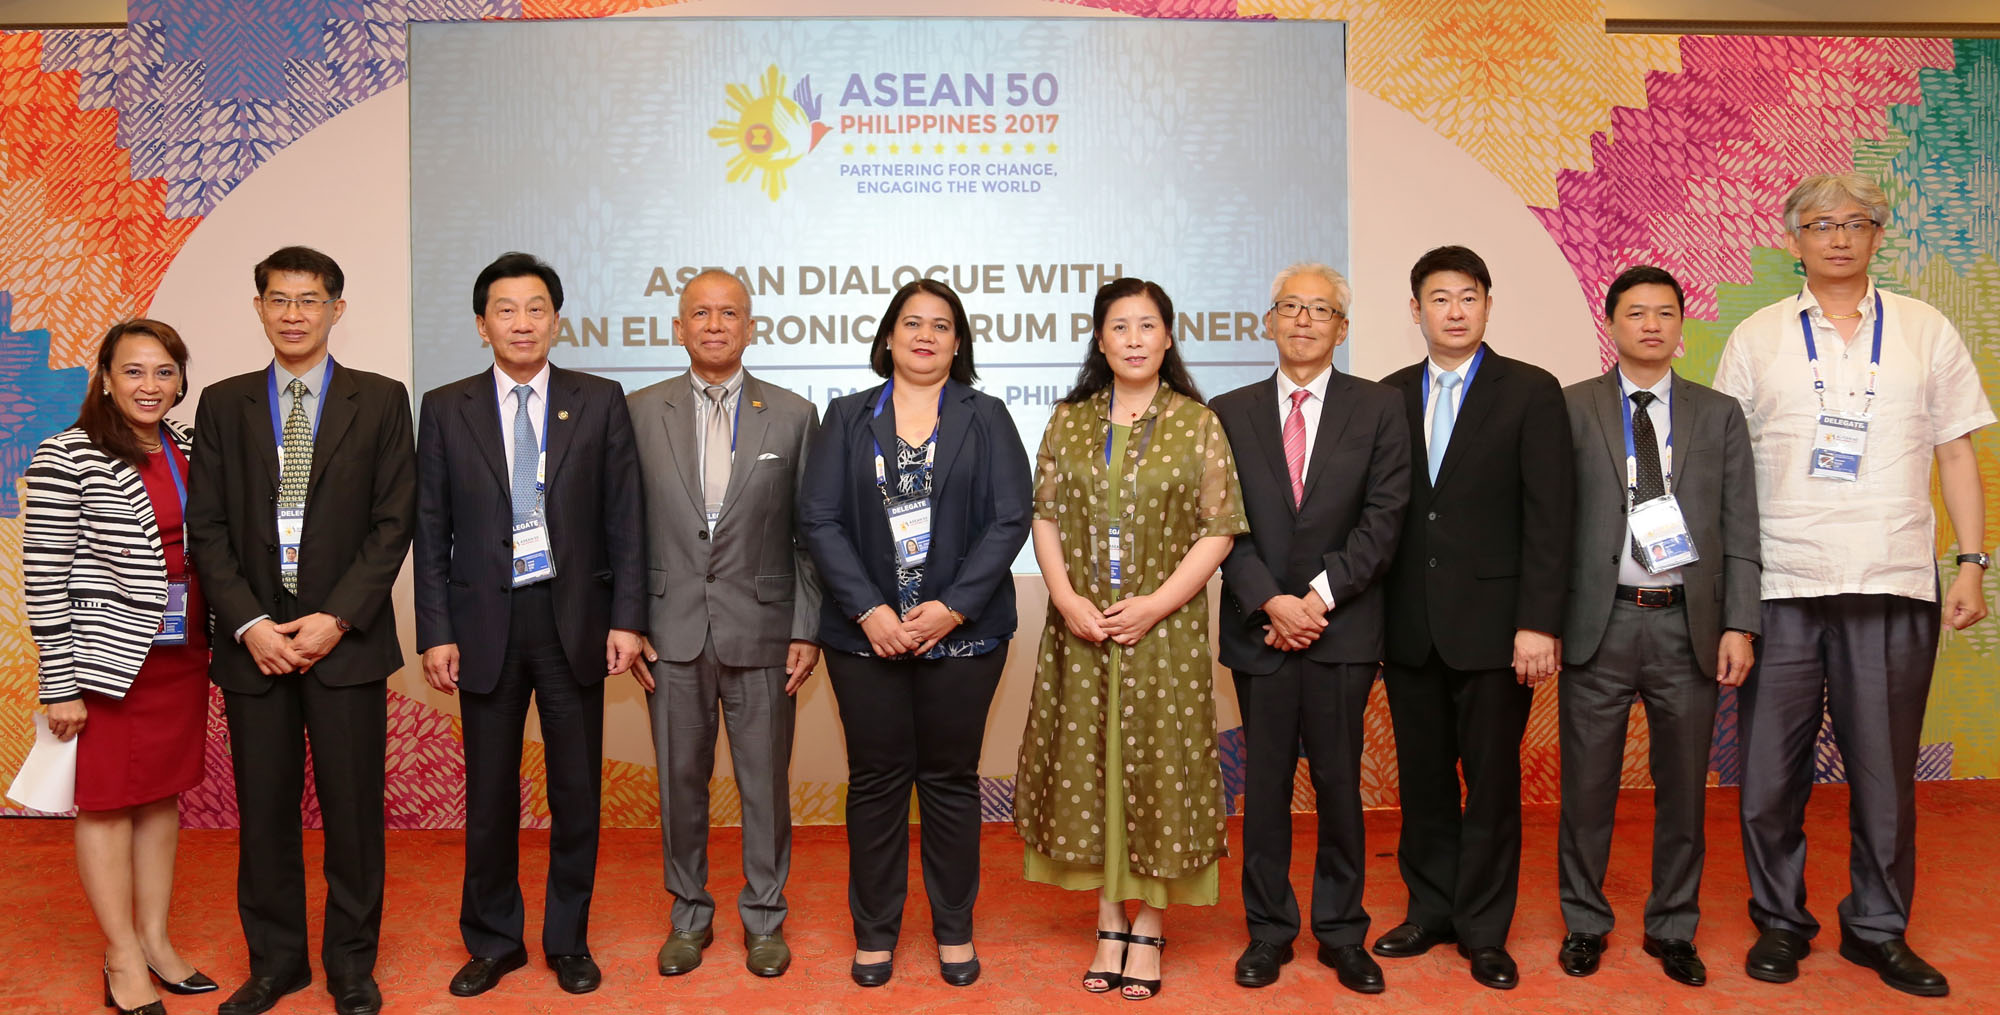 PH ASEAN Electronic Dialogue